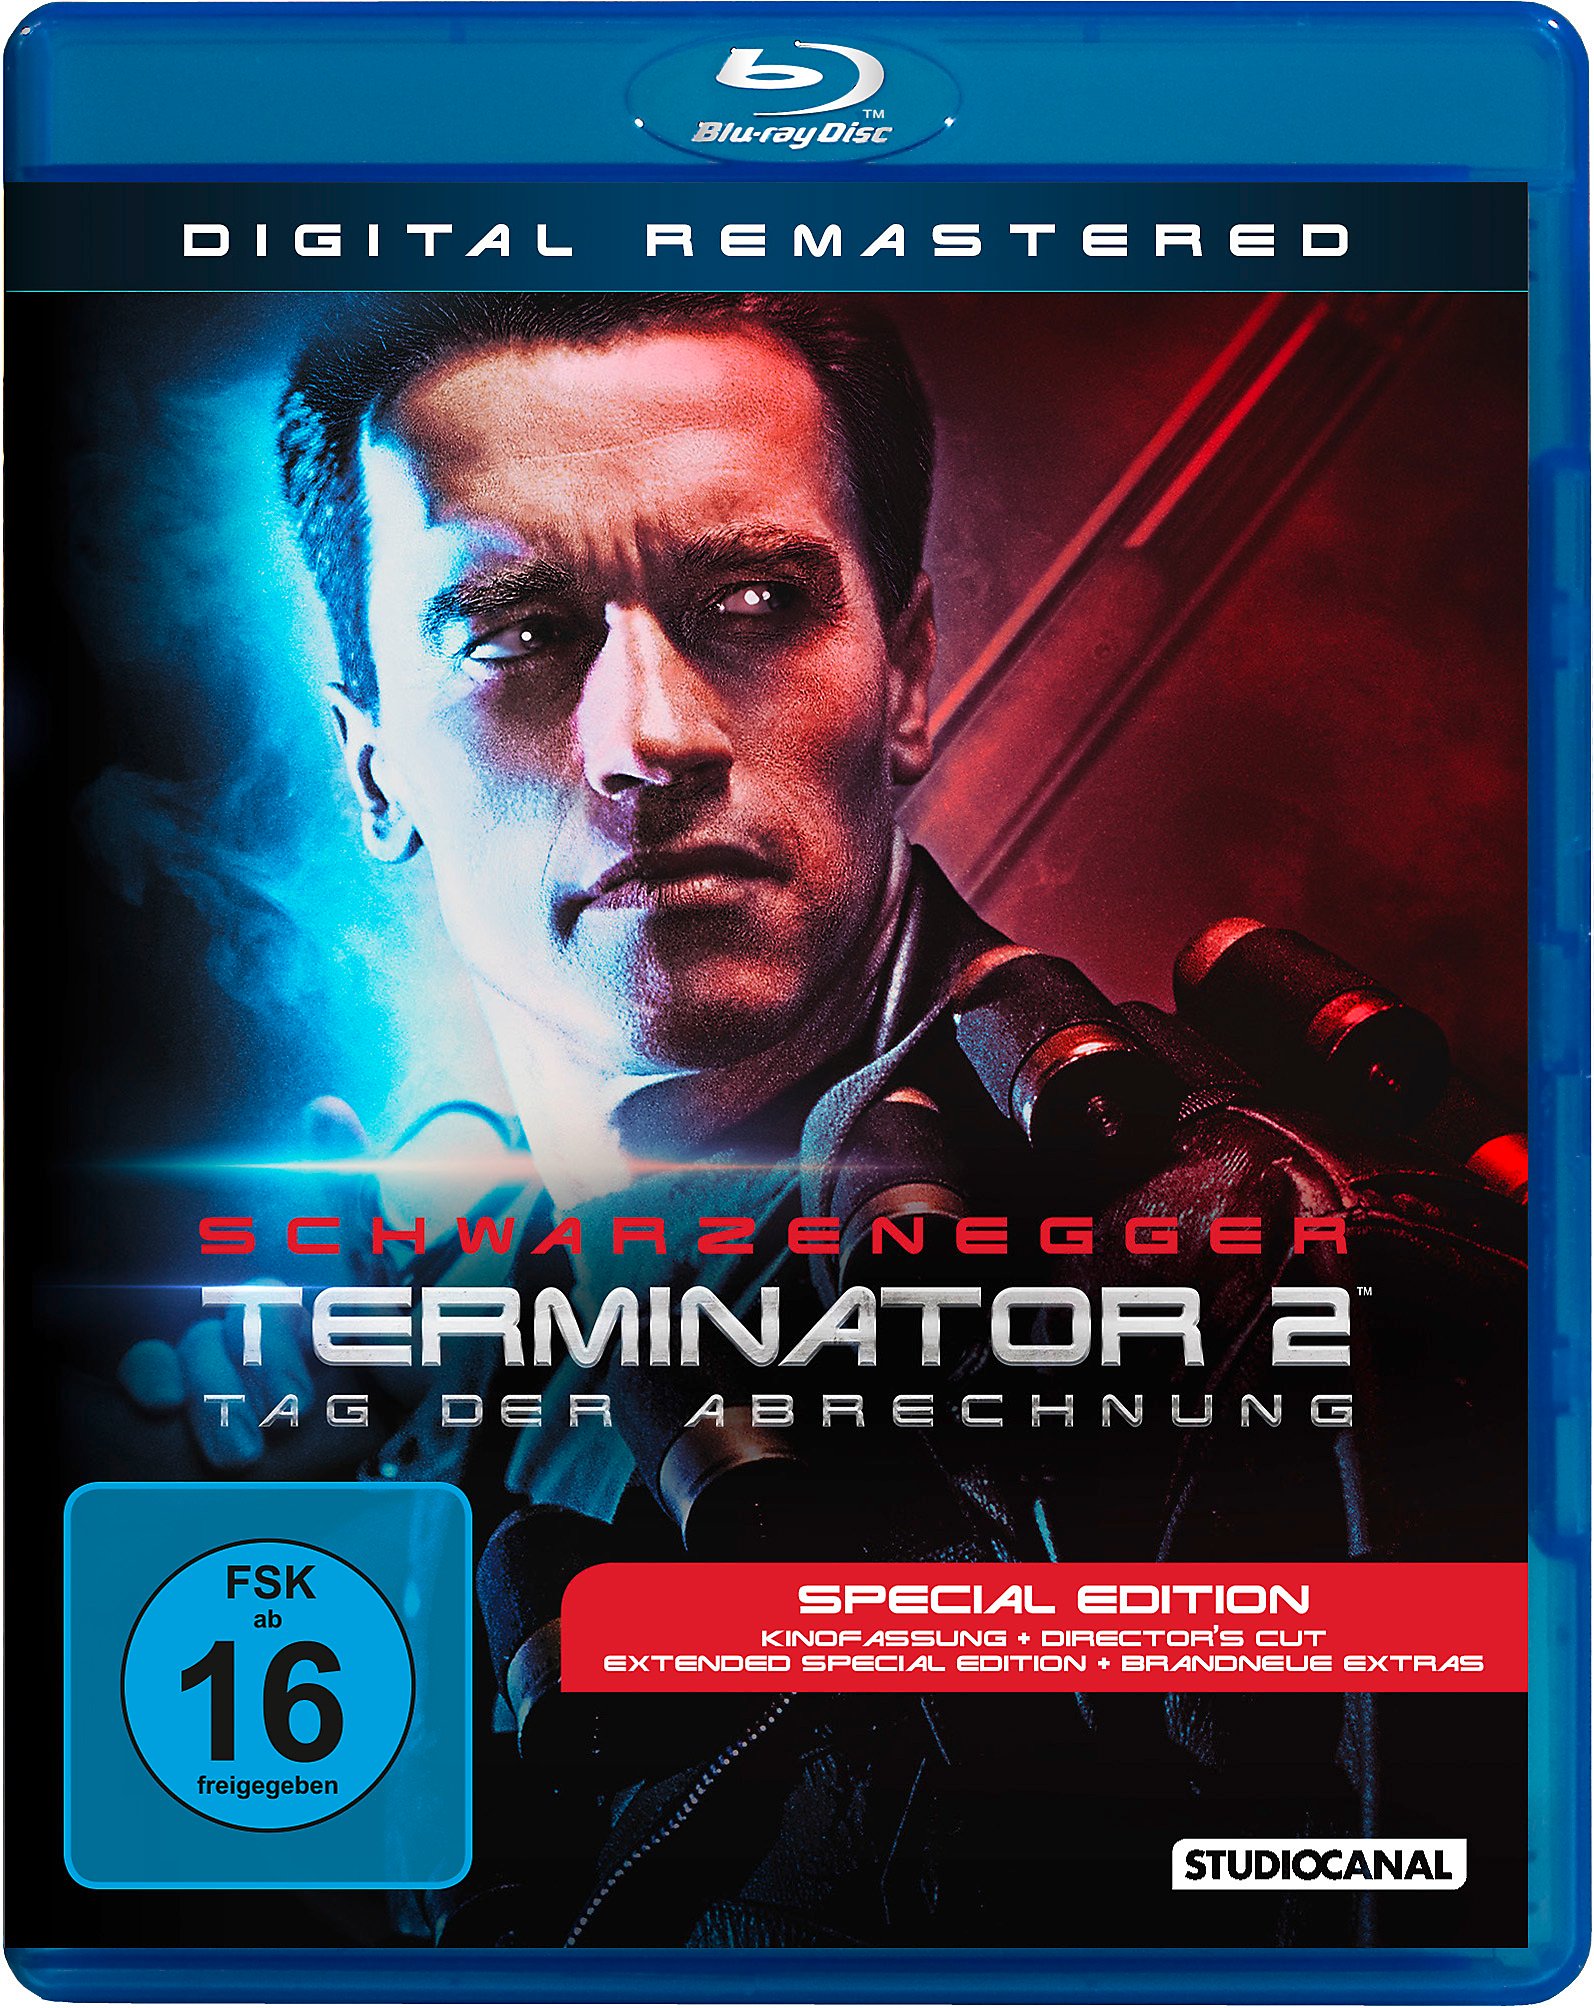 Terminator 2 Blu-ray jetzt im Weltbild.de Shop bestellen